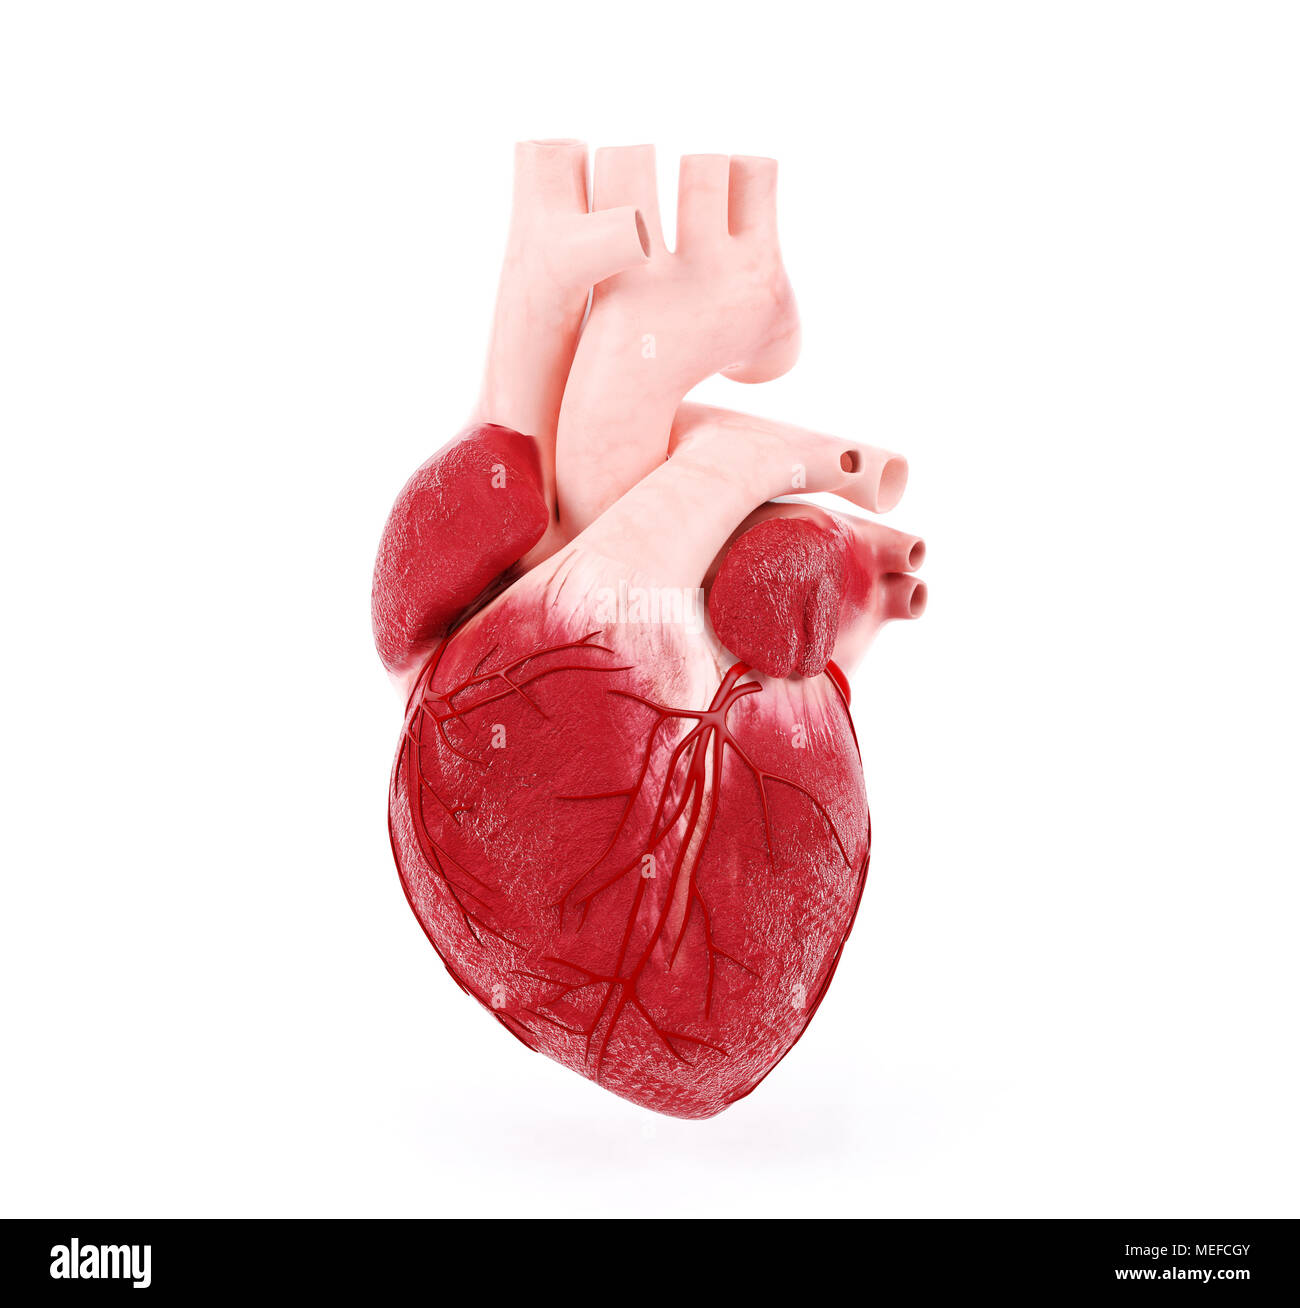 Illustrazione medica di un cuore umano, rendering 3D Foto Stock